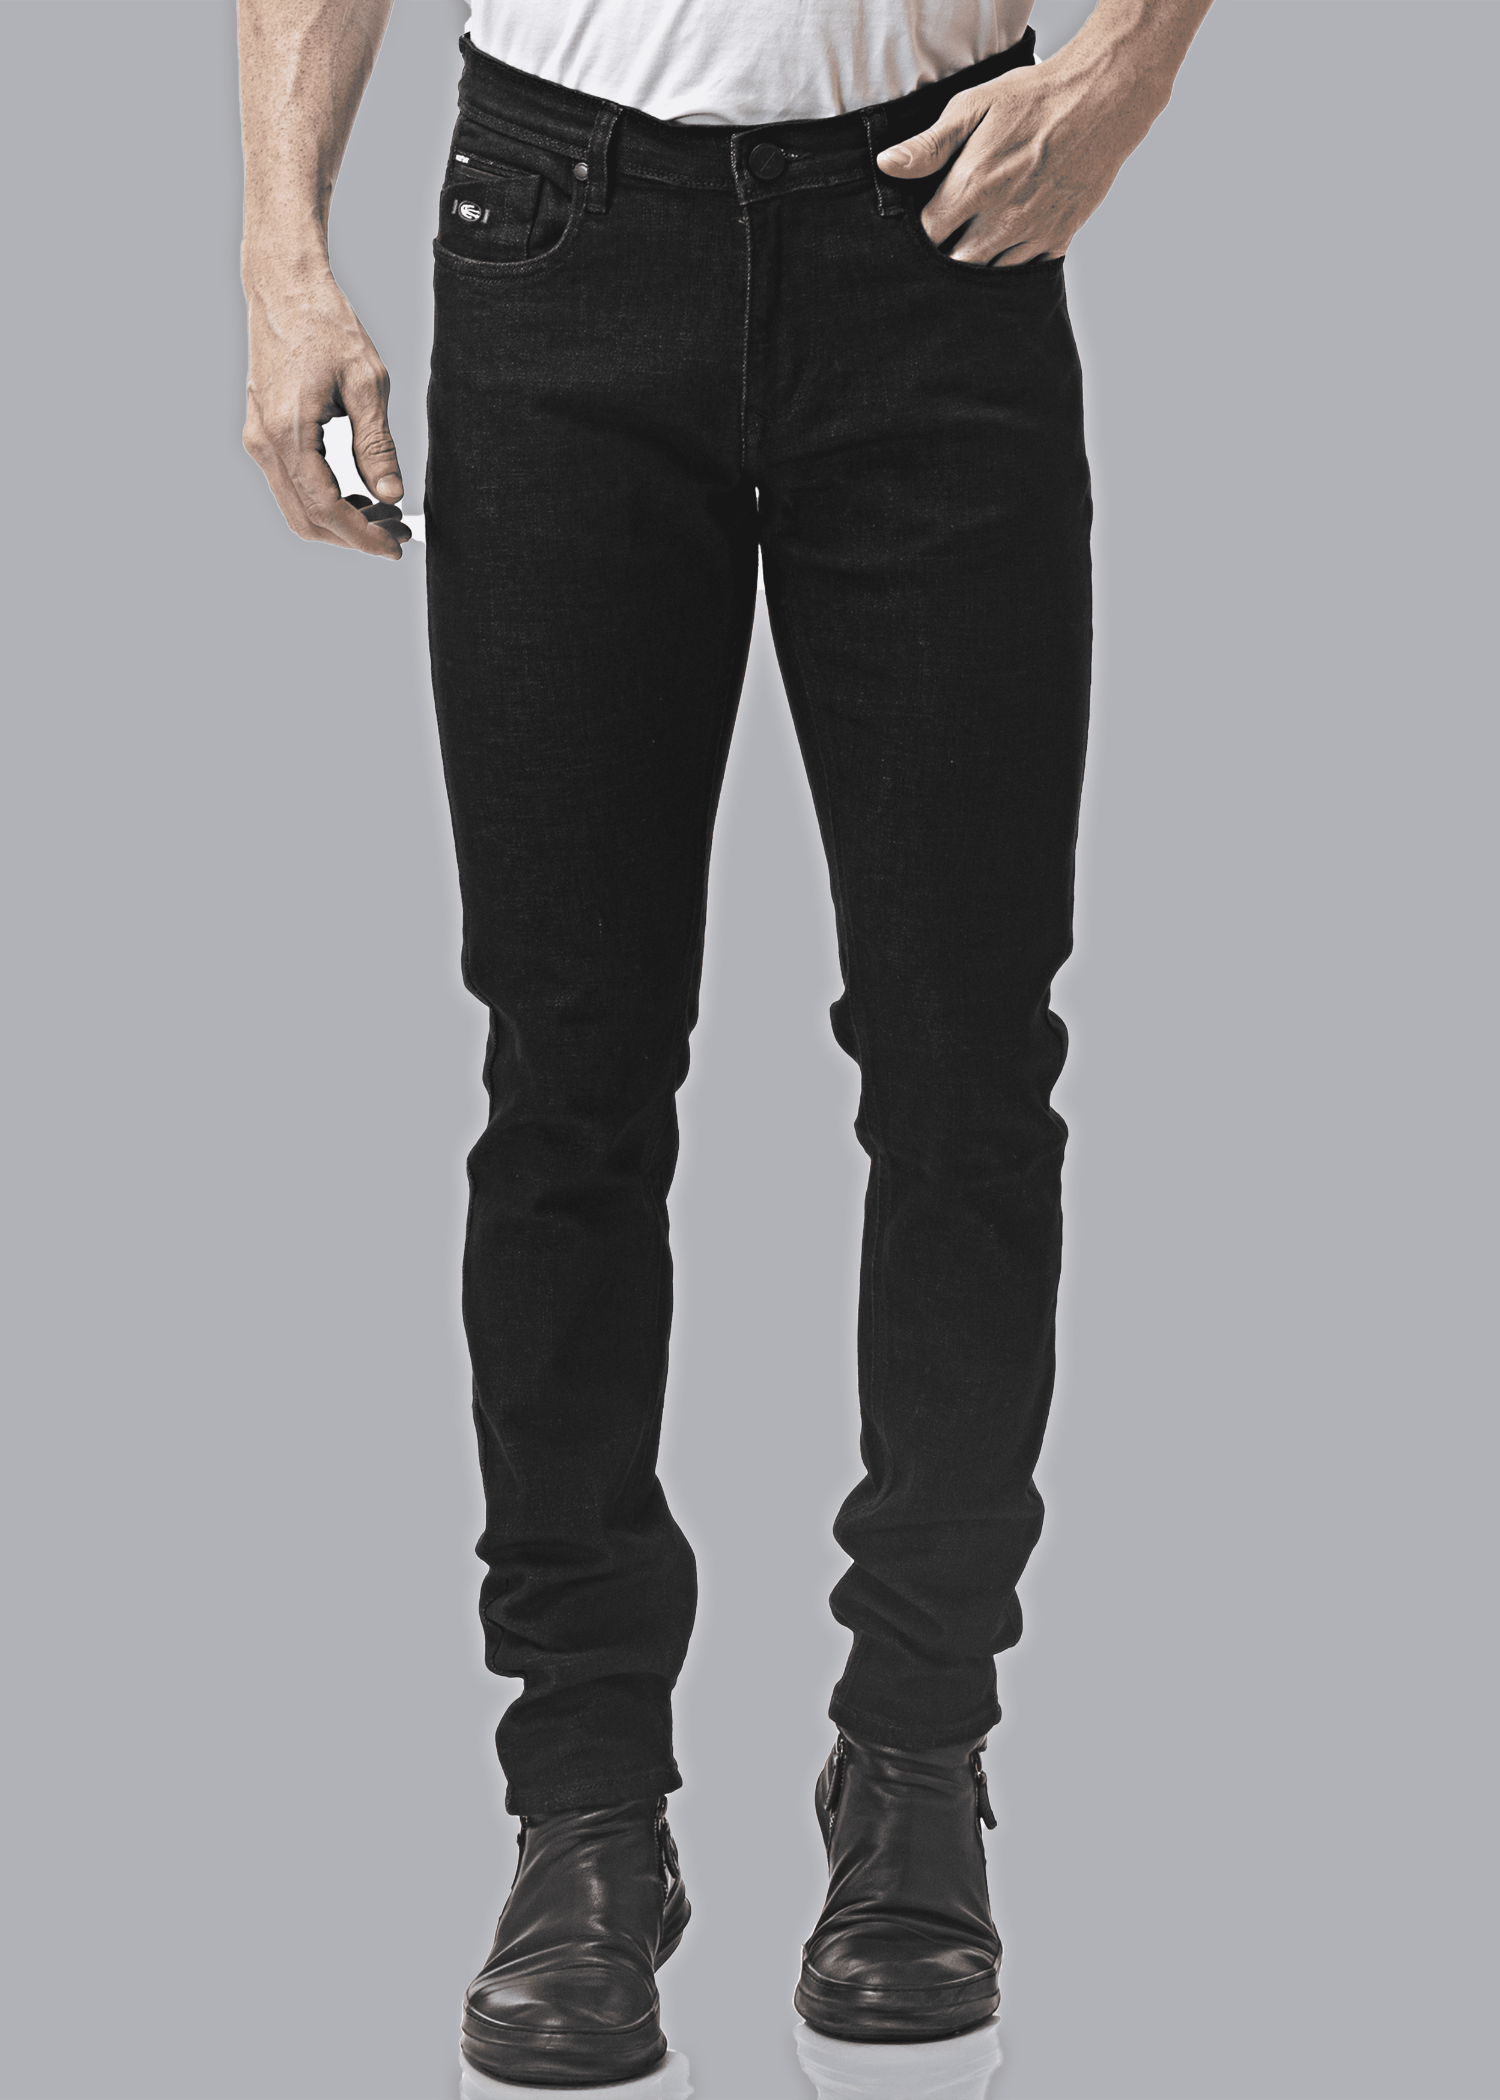 Mack Dark Black Slim Fit Denim Jeans For Men - Nostrum Fashion